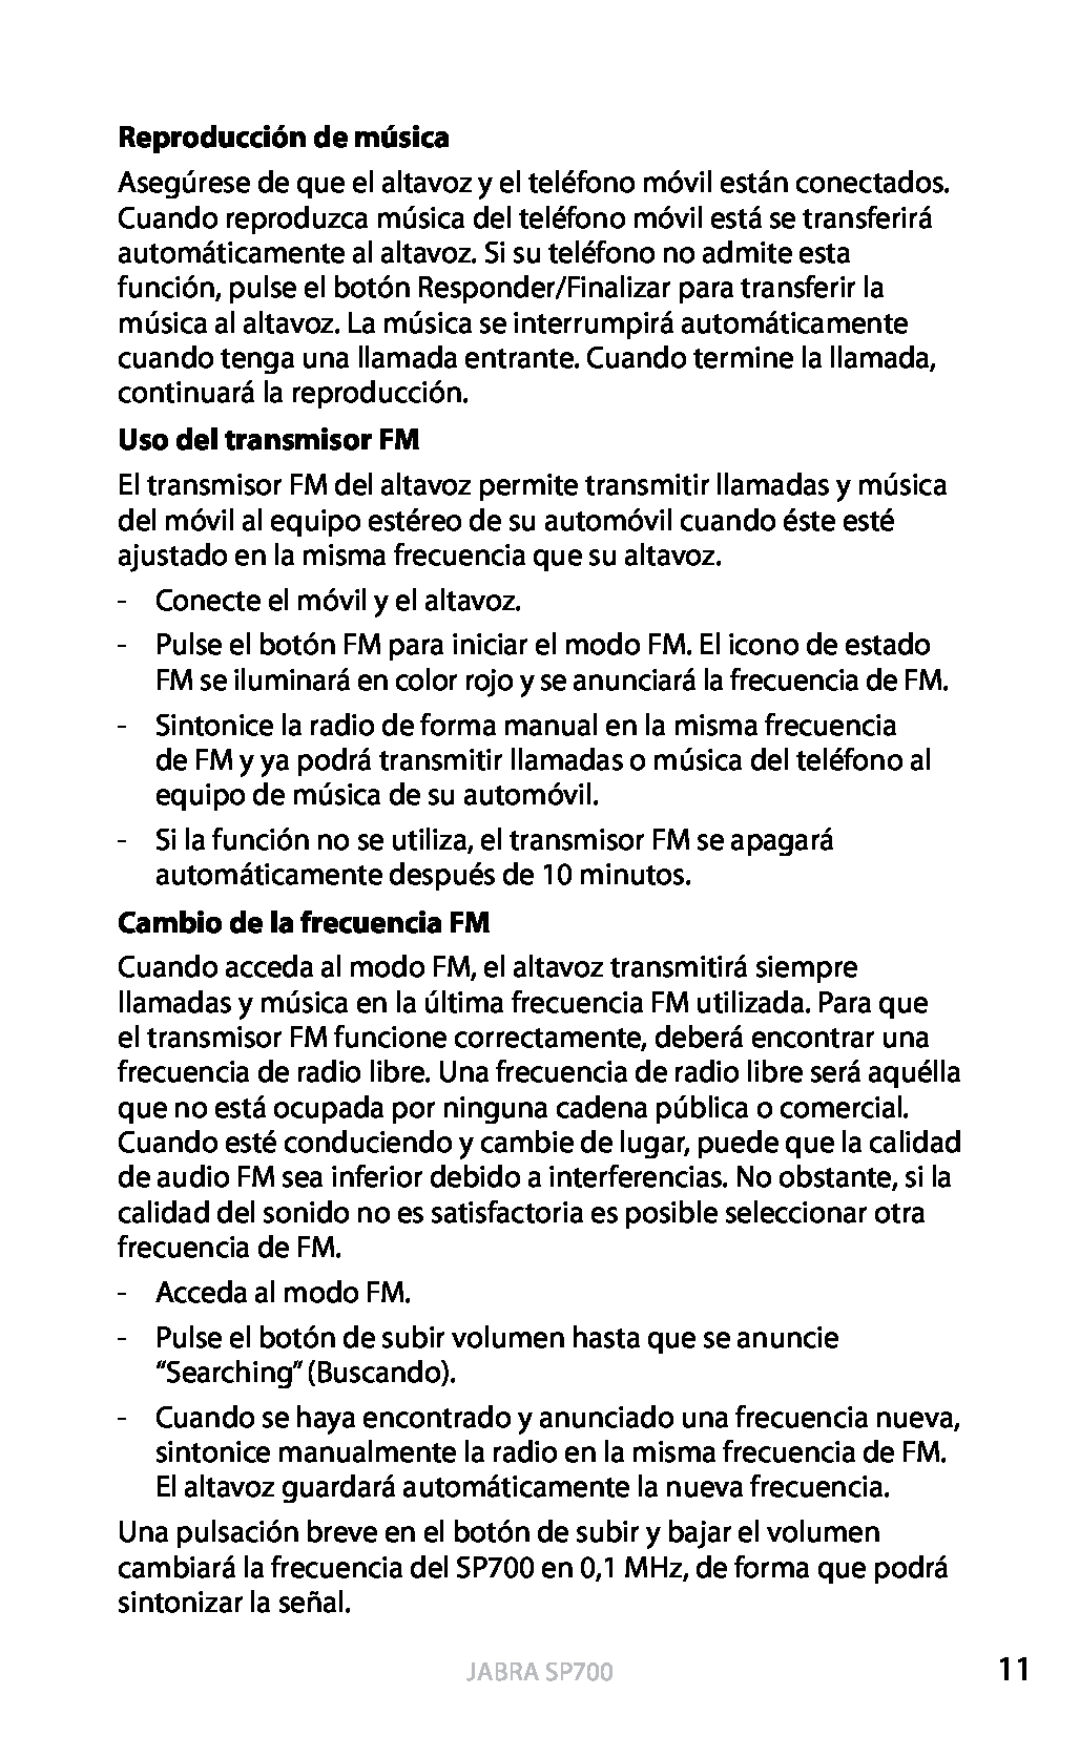 Jabra SP700 user manual Reproducción de música, Uso del transmisor FM, Cambio de la frecuencia FM, Español 